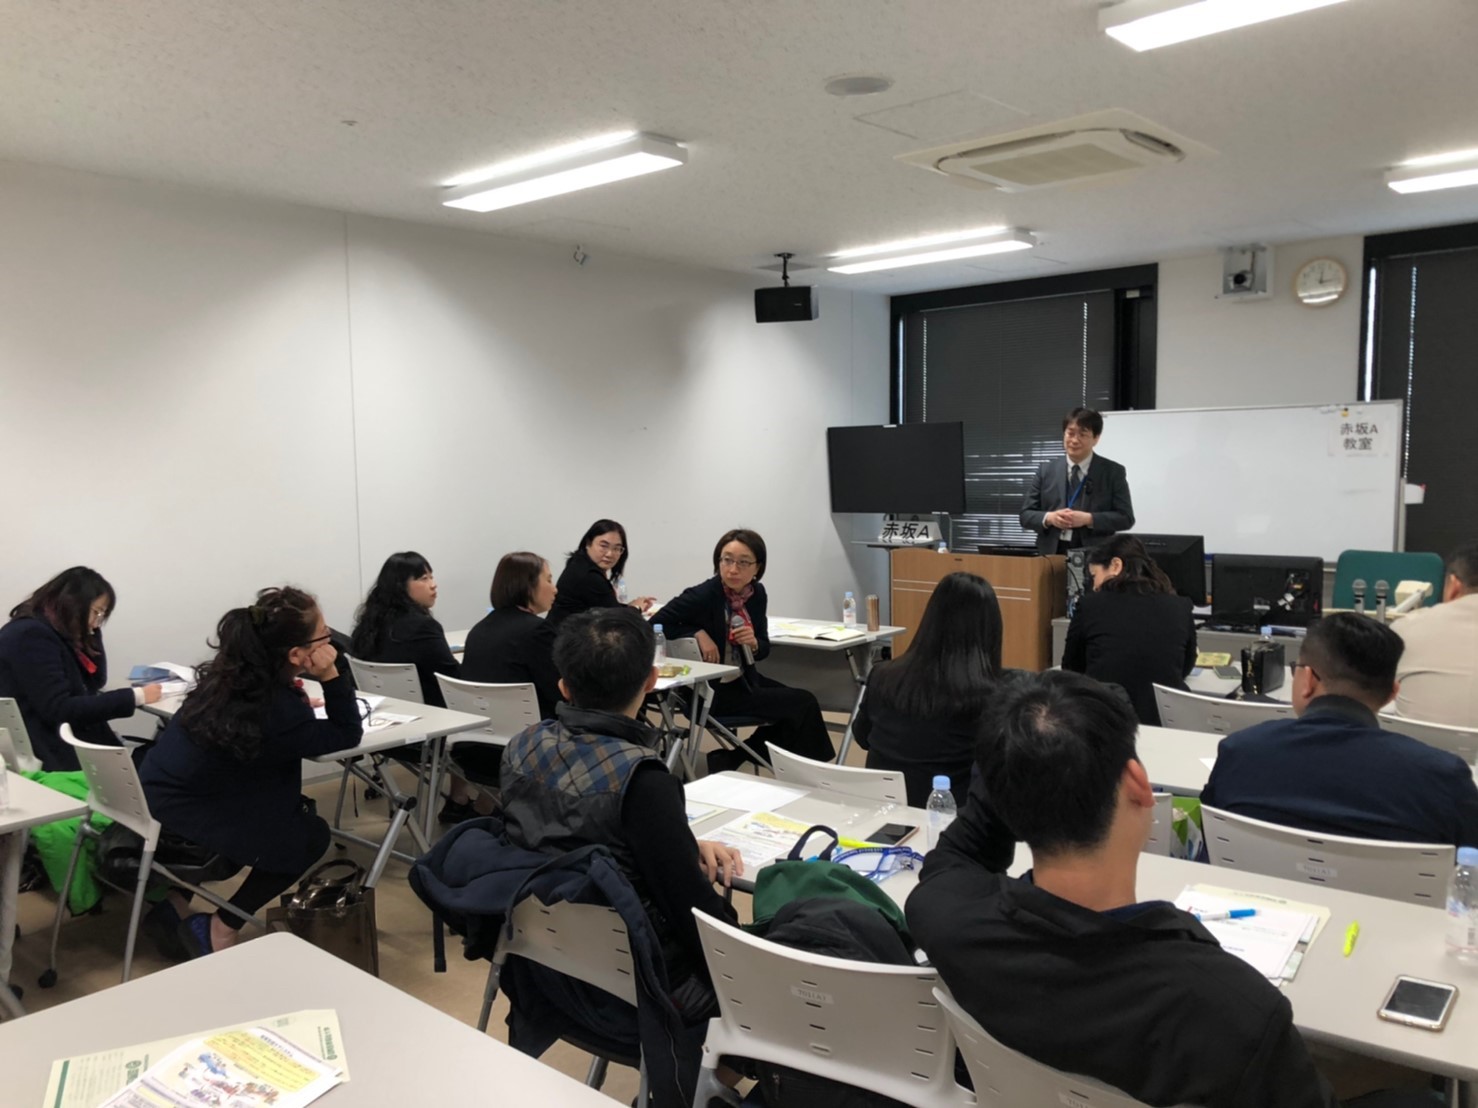 2020日本參訪高齡化社會醫療制度改革及長者居住空間學習之旅-元培醫事科技大學